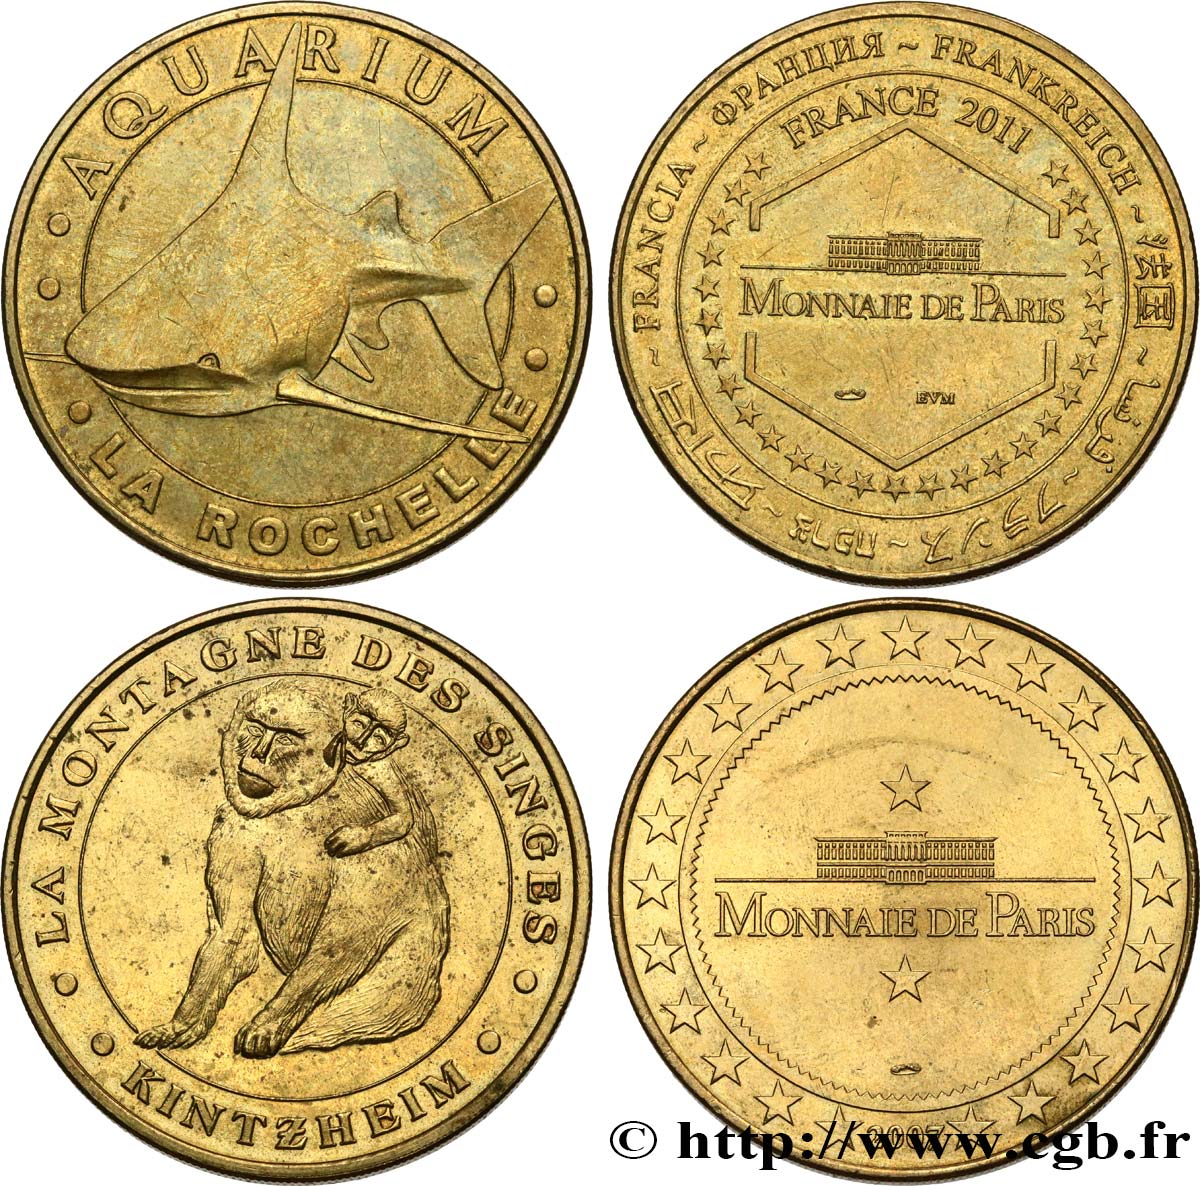 MONUMENTS ET HISTOIRE Médaille touristique, Lot de 2 ex. TTB